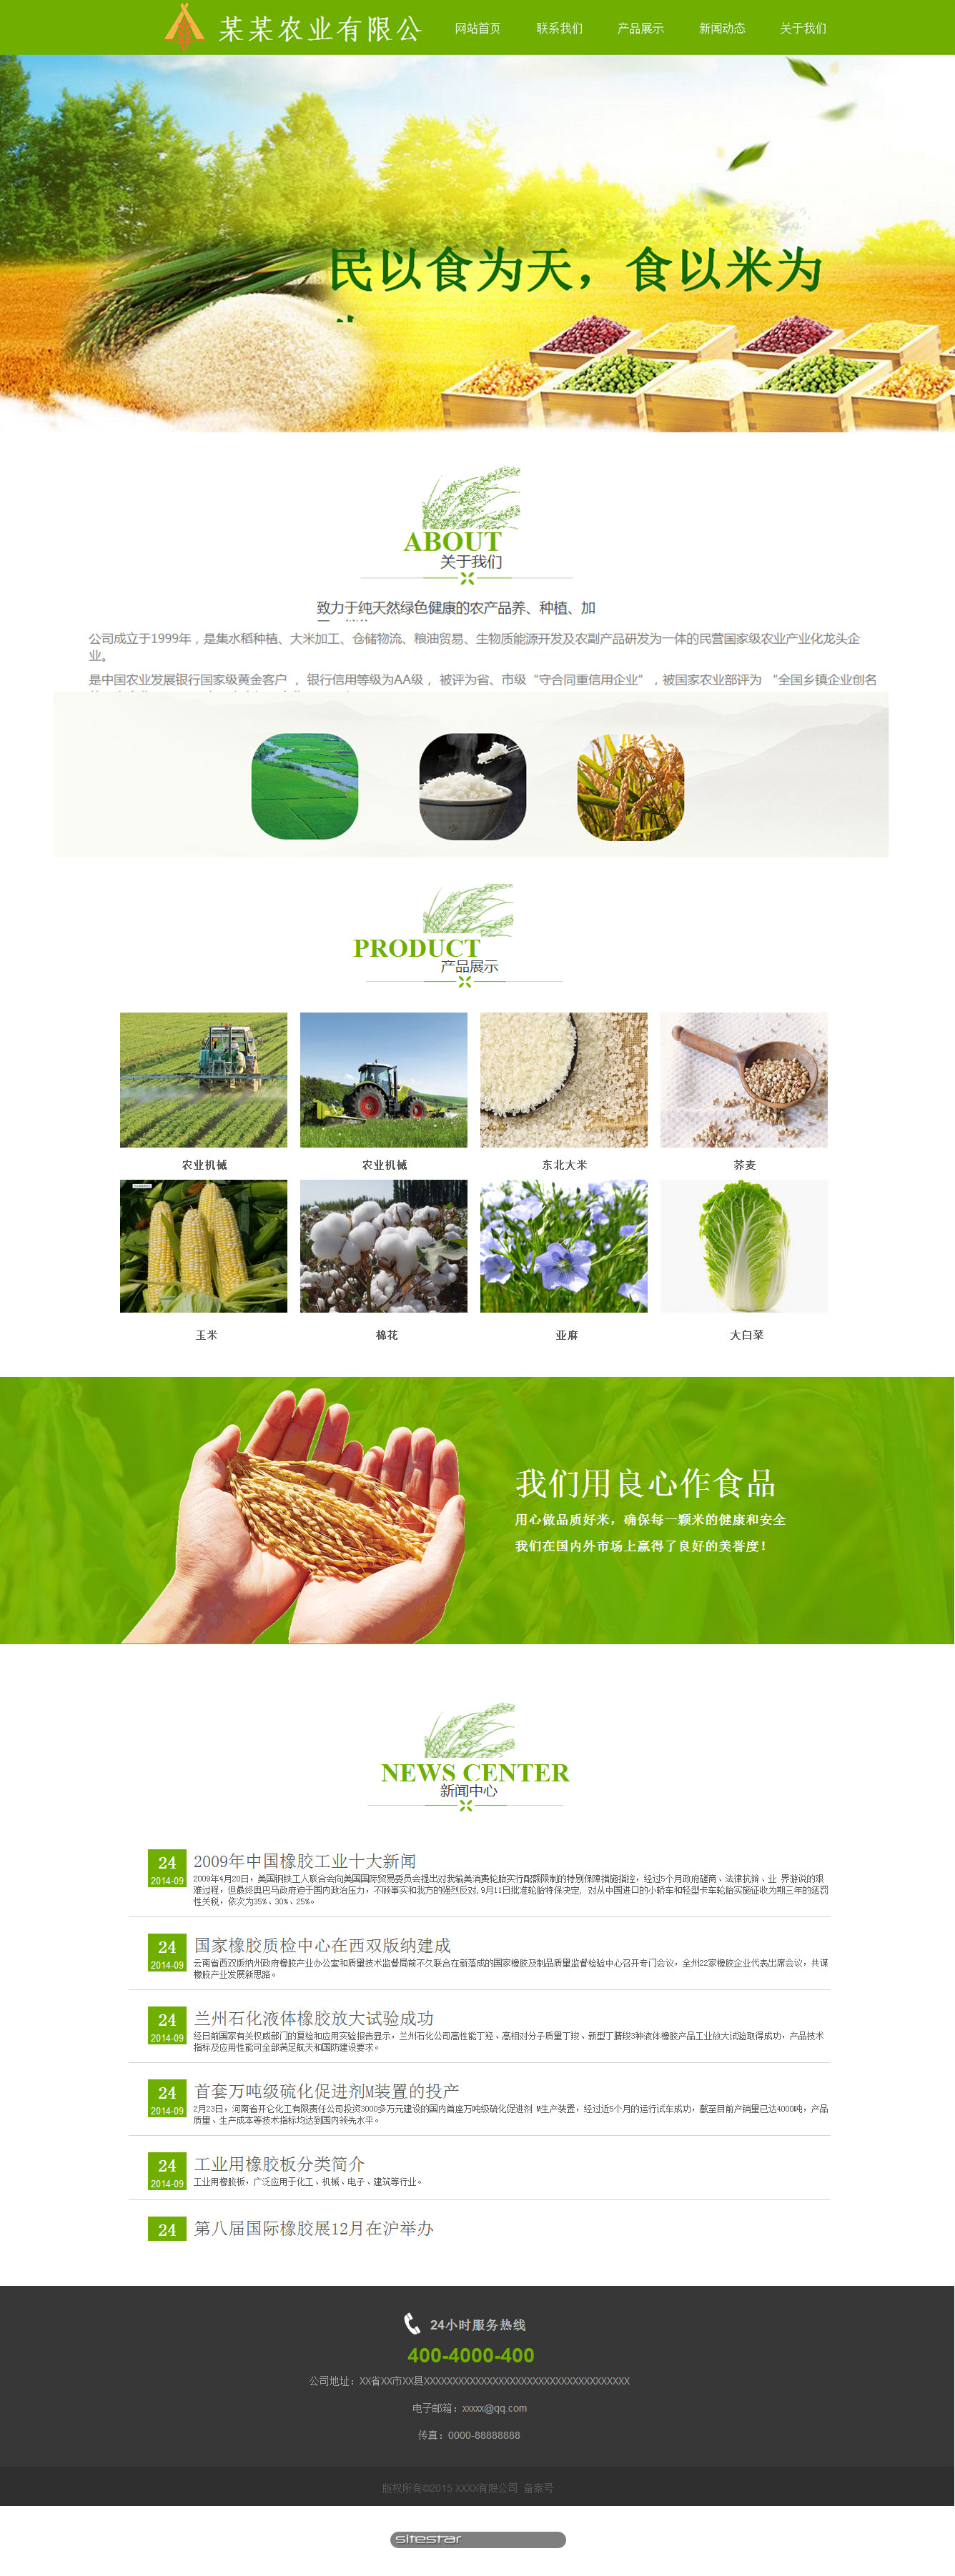 企业网站精美模板-agriculture-1140950